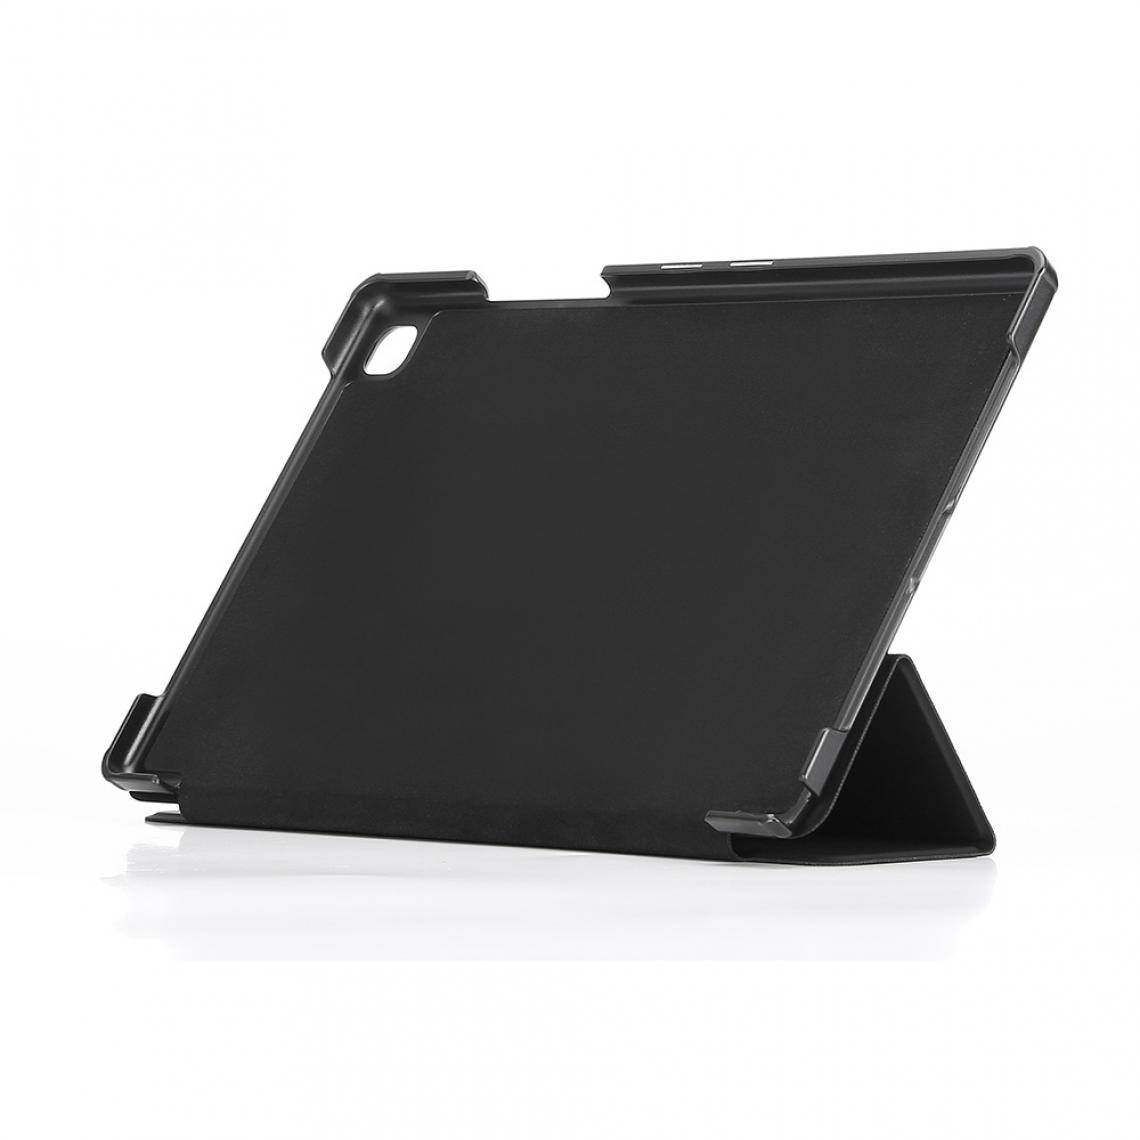 We - WE Coque pour Samsung Galaxy Tab A7 10.4, Housse de Protection Etui Mince et Léger pour Tablette Samsung Tab A7 2020 SM-T500/505/507 - Noir - Coque, étui smartphone